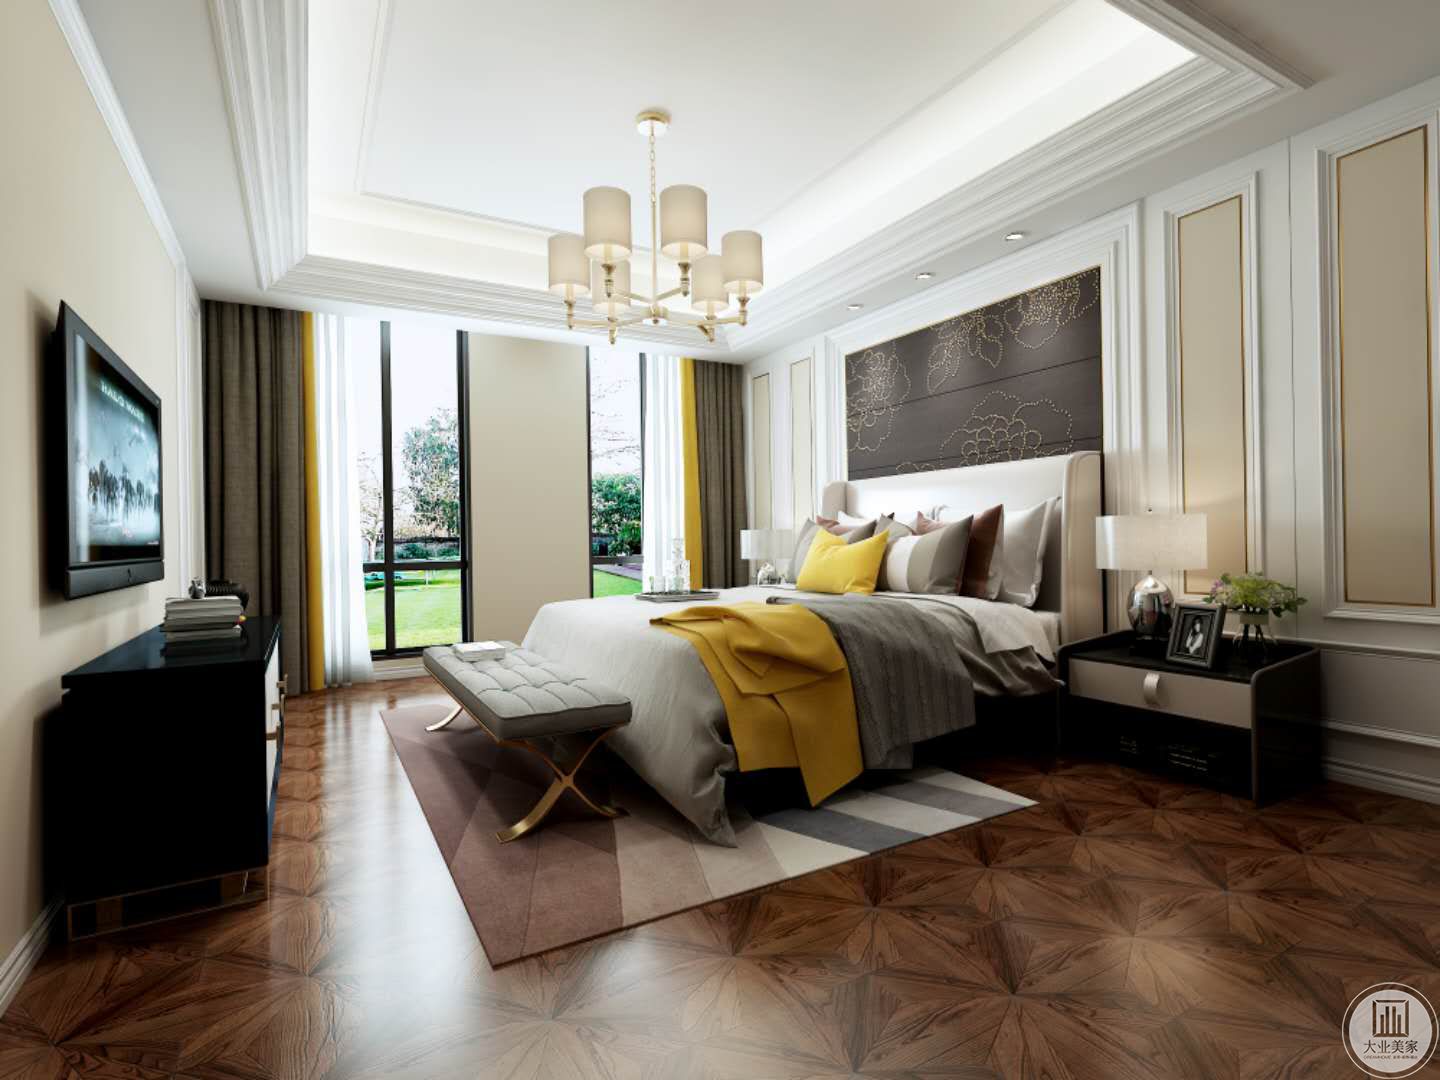 美式古典风格装修中的家具也很有特色，主色调是黑、暗红、褐色及深色的美式古典风格家具色泽较深，在家中更显稳重优雅。其卧床有高柱和帐幔，曼妙的床幔可以看出美式古典风格的优雅美。